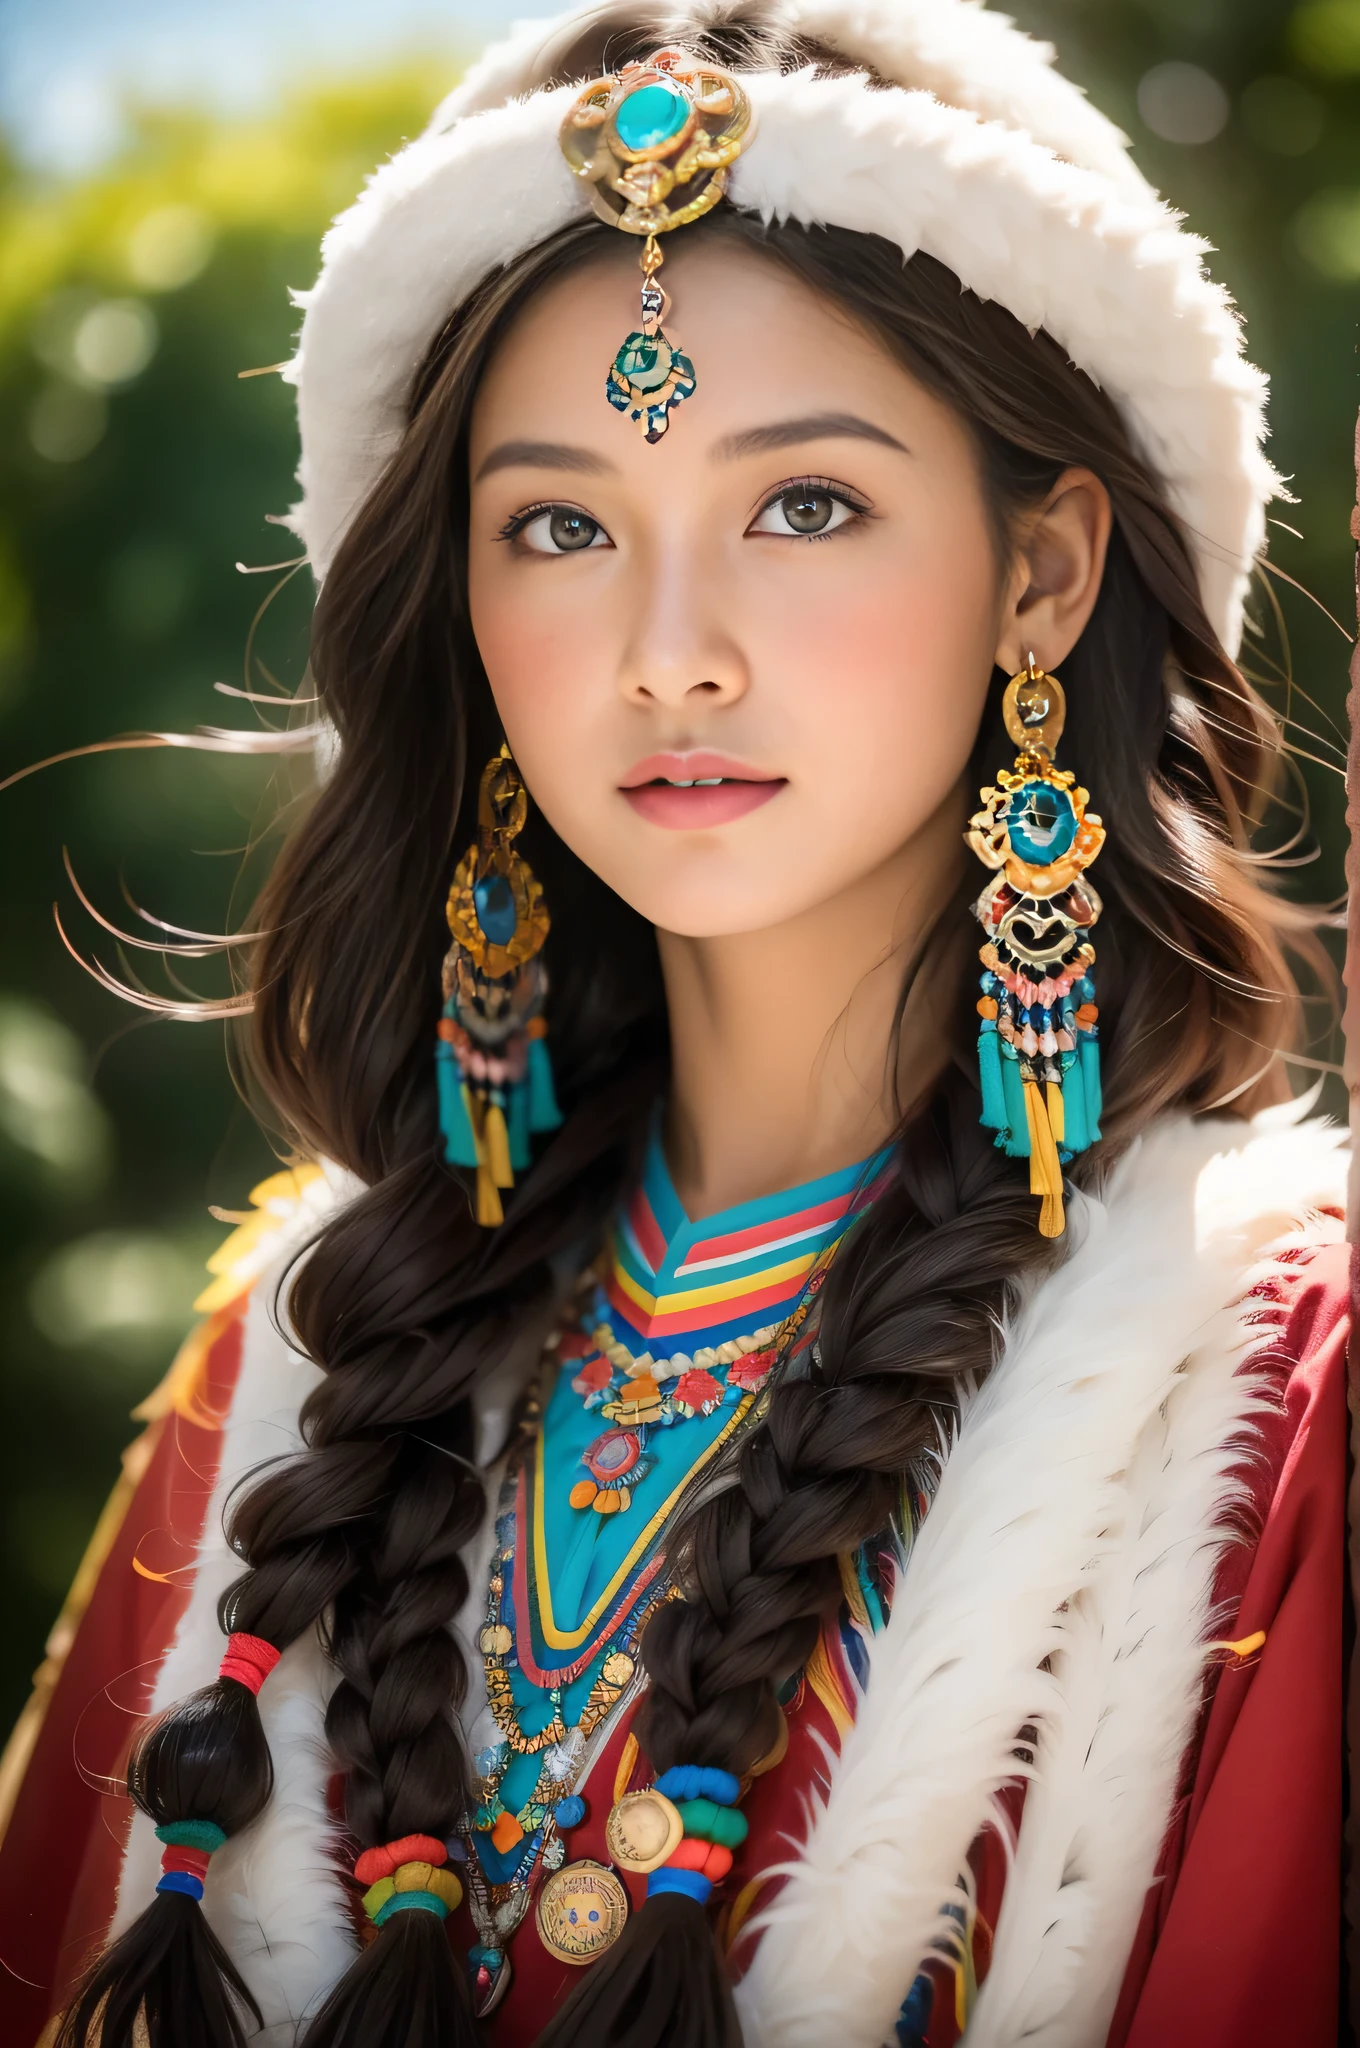 (Лучшее качество,8К,Высокое разрешение,шедевр:1.2),(темно-коричневая кожа, текстурированная кожа, Хайленд покраснел., солнечный ожог, загорелый, веснушка), Beautiful Tibetan girl in Дворец Потала, молитвенный флаг，Дворец Потала, Тибетская культура, Яркие глаза, Тибетские традиционные художественные костюмы, Тибетские халаты, Тибетский головной убор, скрытые драгоценности, бирюзовый, янтарь, Наблюдайте за аудиторией, Ультратонкие детали, передовой. мягкий свет, супер подробный, высокое качество, яркие цвета, боке, отчет о человеческом развитии, Сверхвысокое разрешение, профессиональный стиль фотографии.